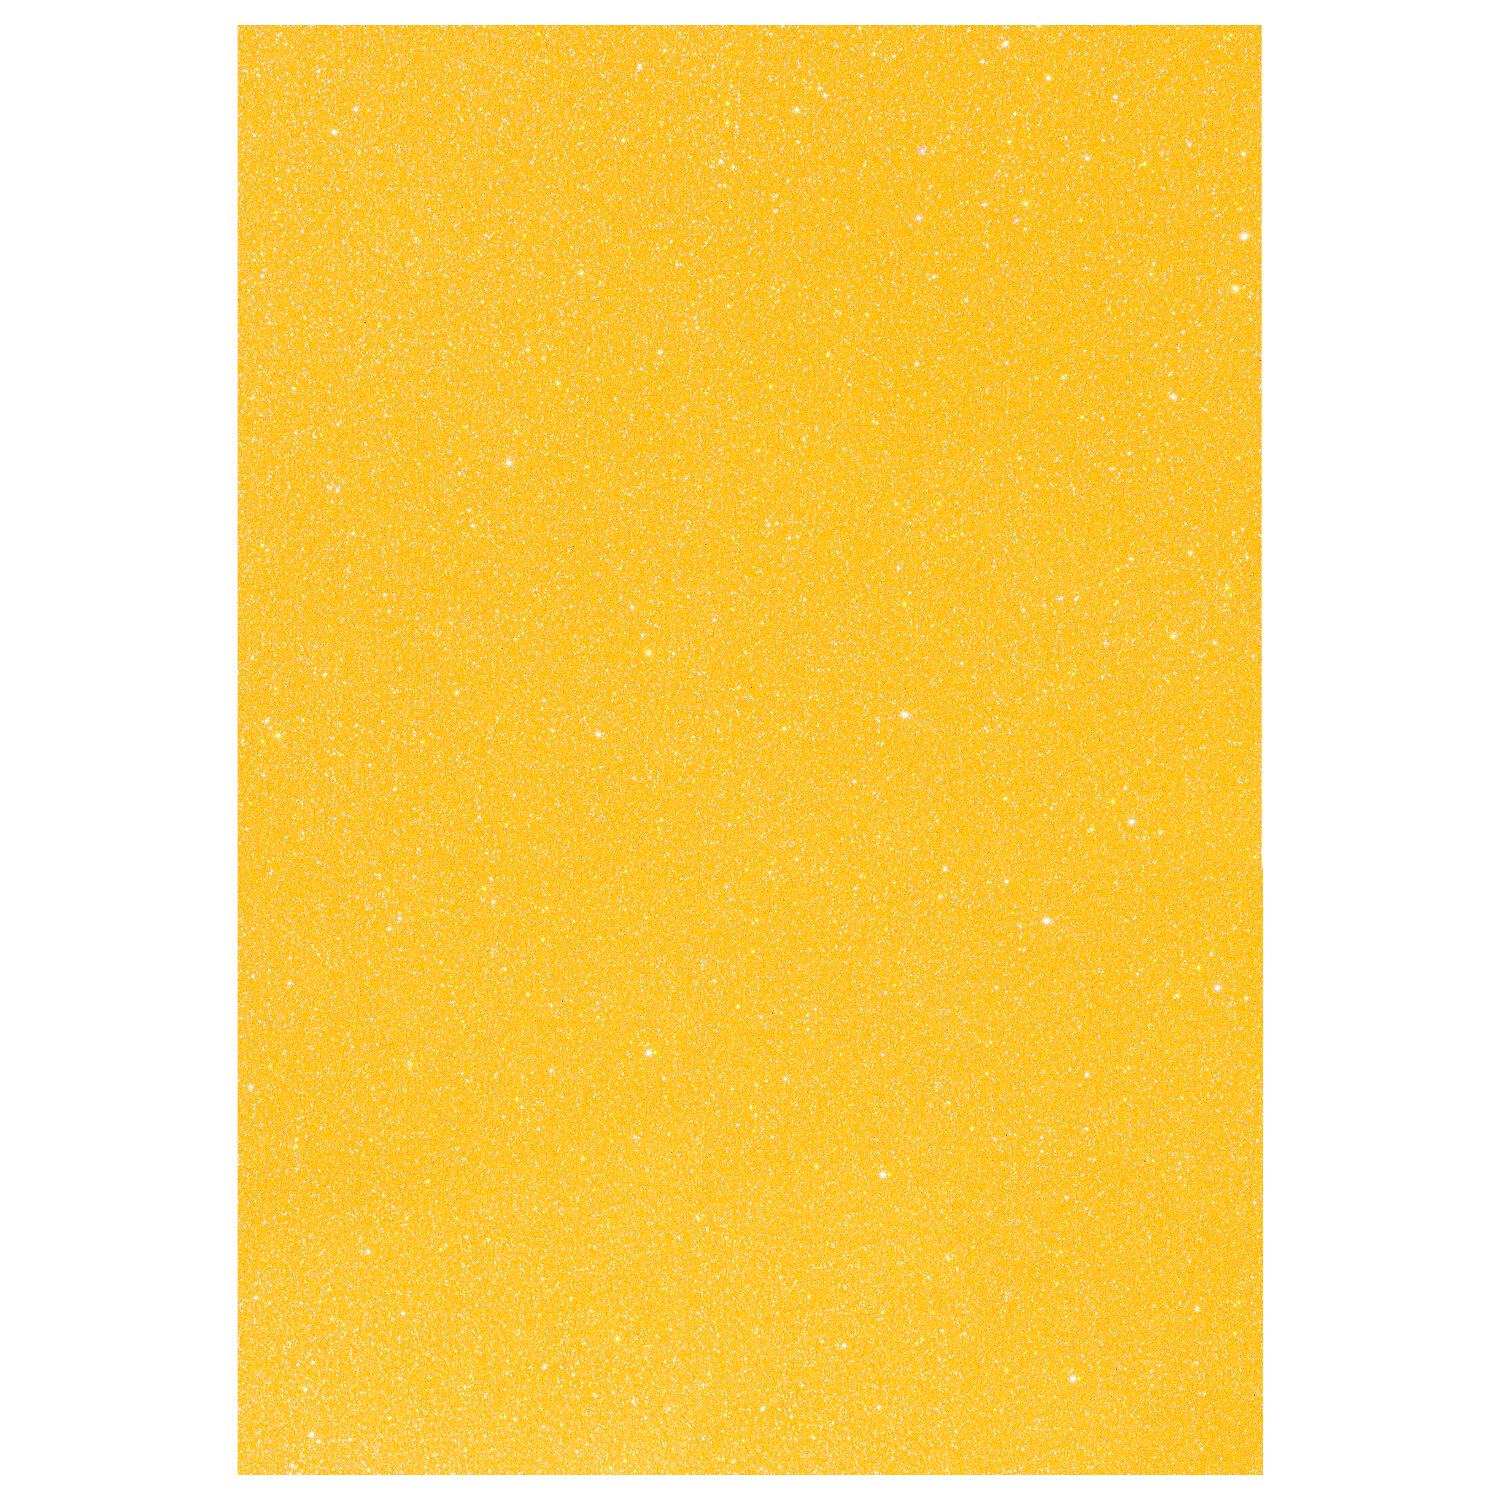 NEU Glitter-Karton, 200 g/qm, einseitig mit Glitzer, DIN A4, Gelb Irisierend